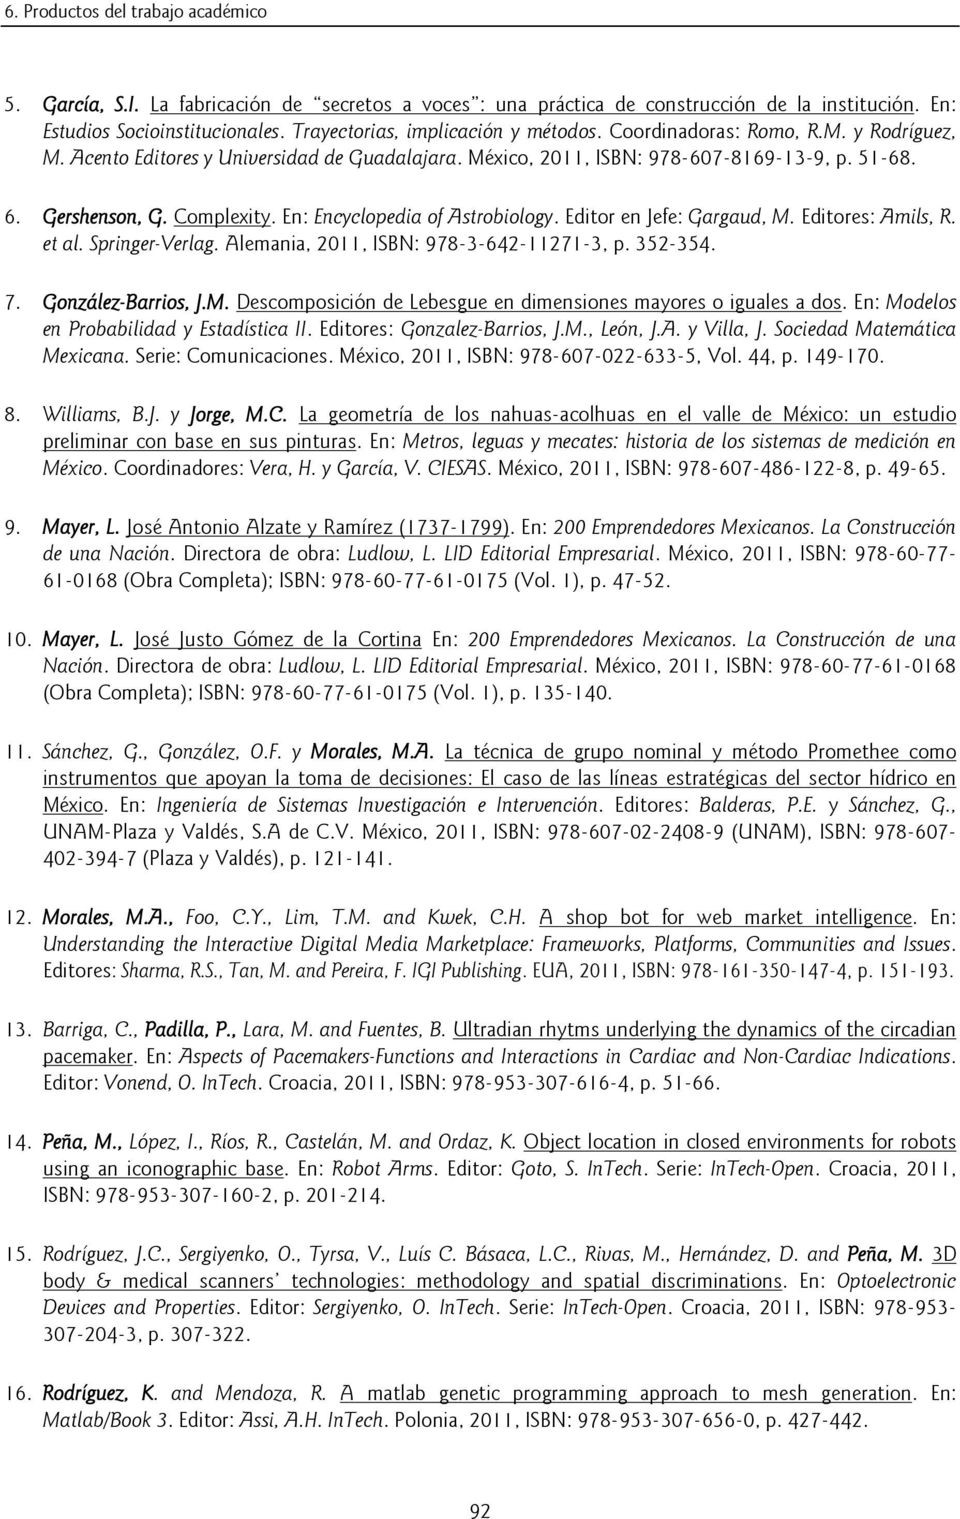 Complexity. En: Encyclopedia of Astrobiology. Editor en Jefe: Gargaud, M. Editores: Amils, R. et al. Springer-Verlag. Alemania, 2011, ISBN: 978-3-642-11271-3, p. 352-354. 7. González-Barrios, J.M. Descomposición de Lebesgue en dimensiones mayores o iguales a dos.